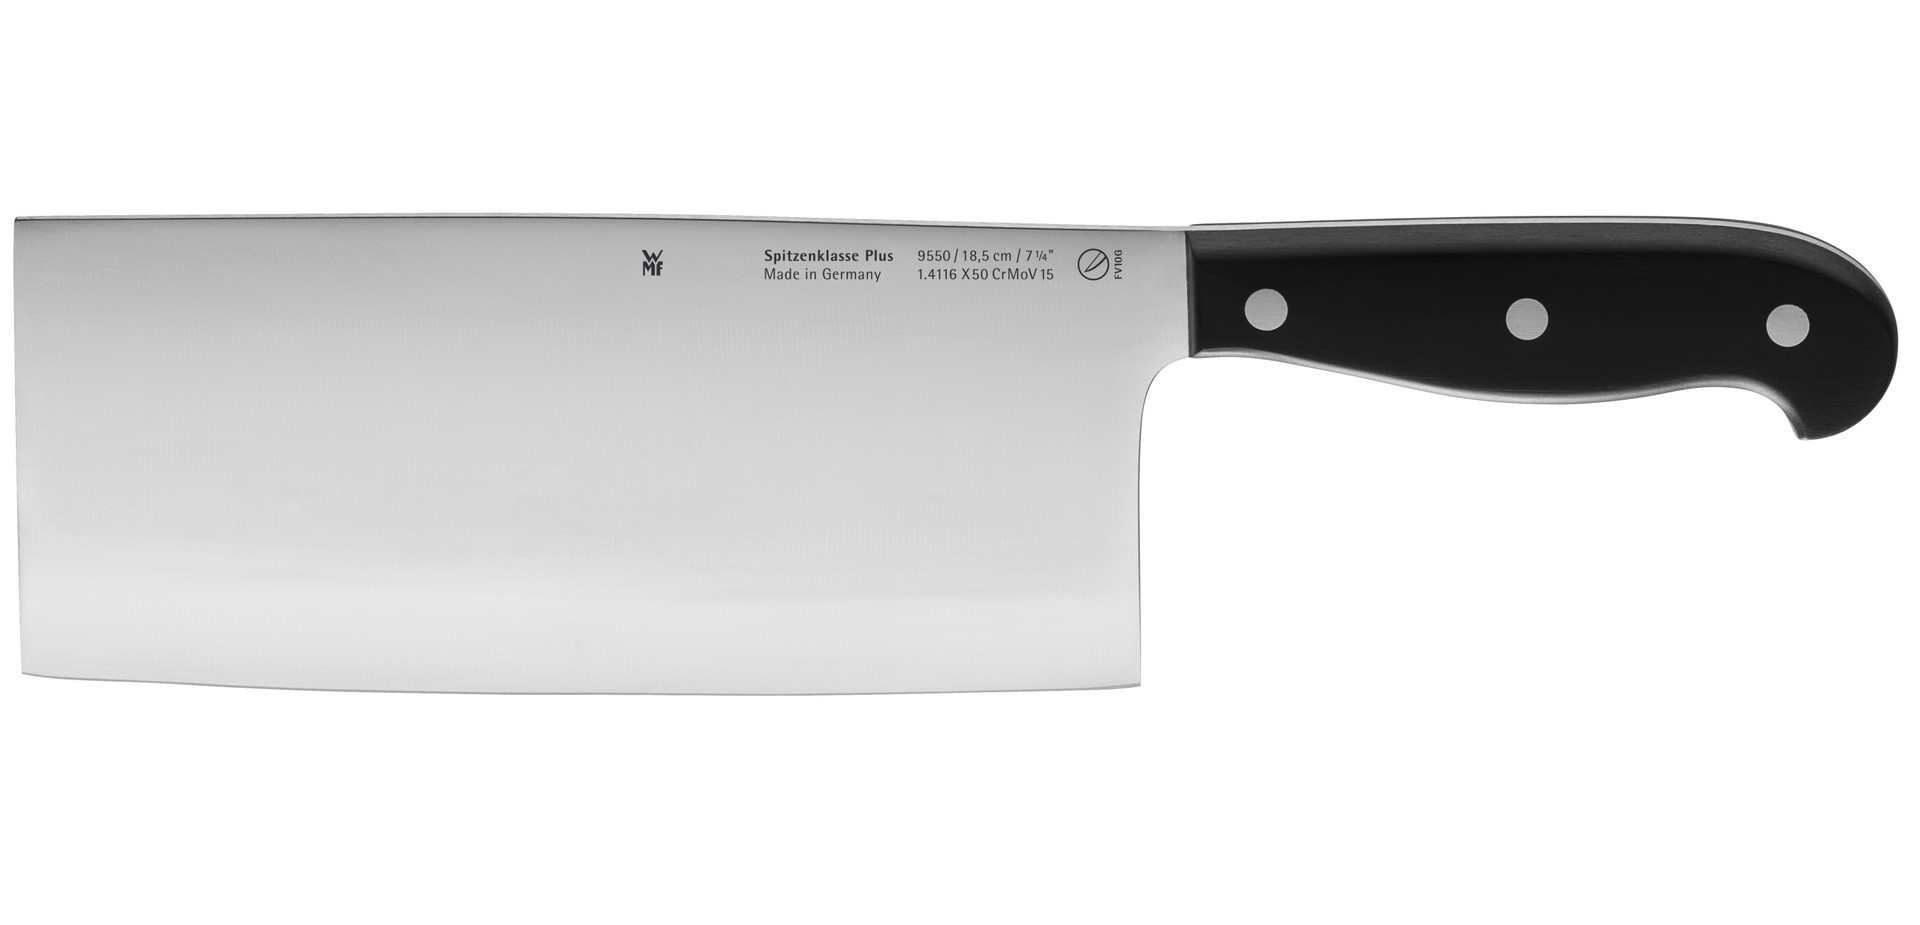 WMF Spitzenklasse Čínský nůž Plus 18,5cm